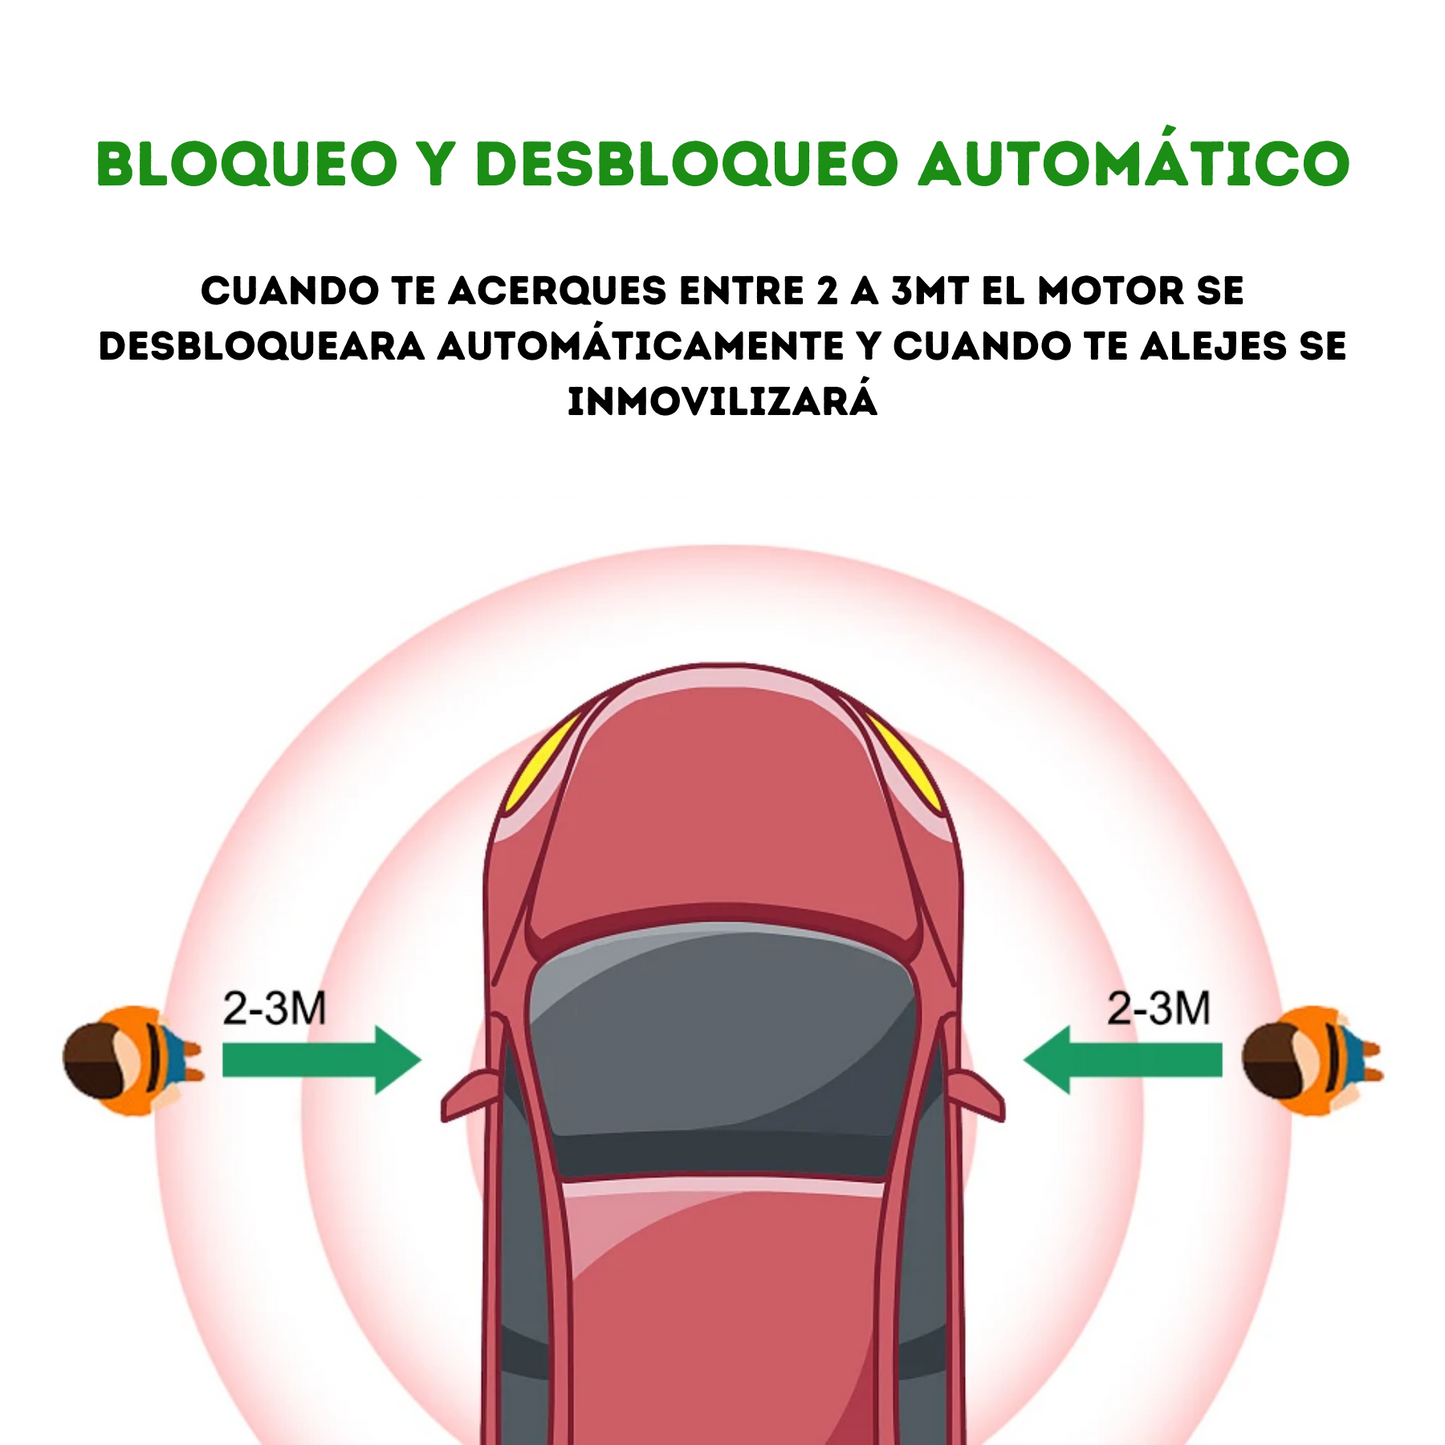 Safecar ® - Inmovilizador Para Auto Antirrobo